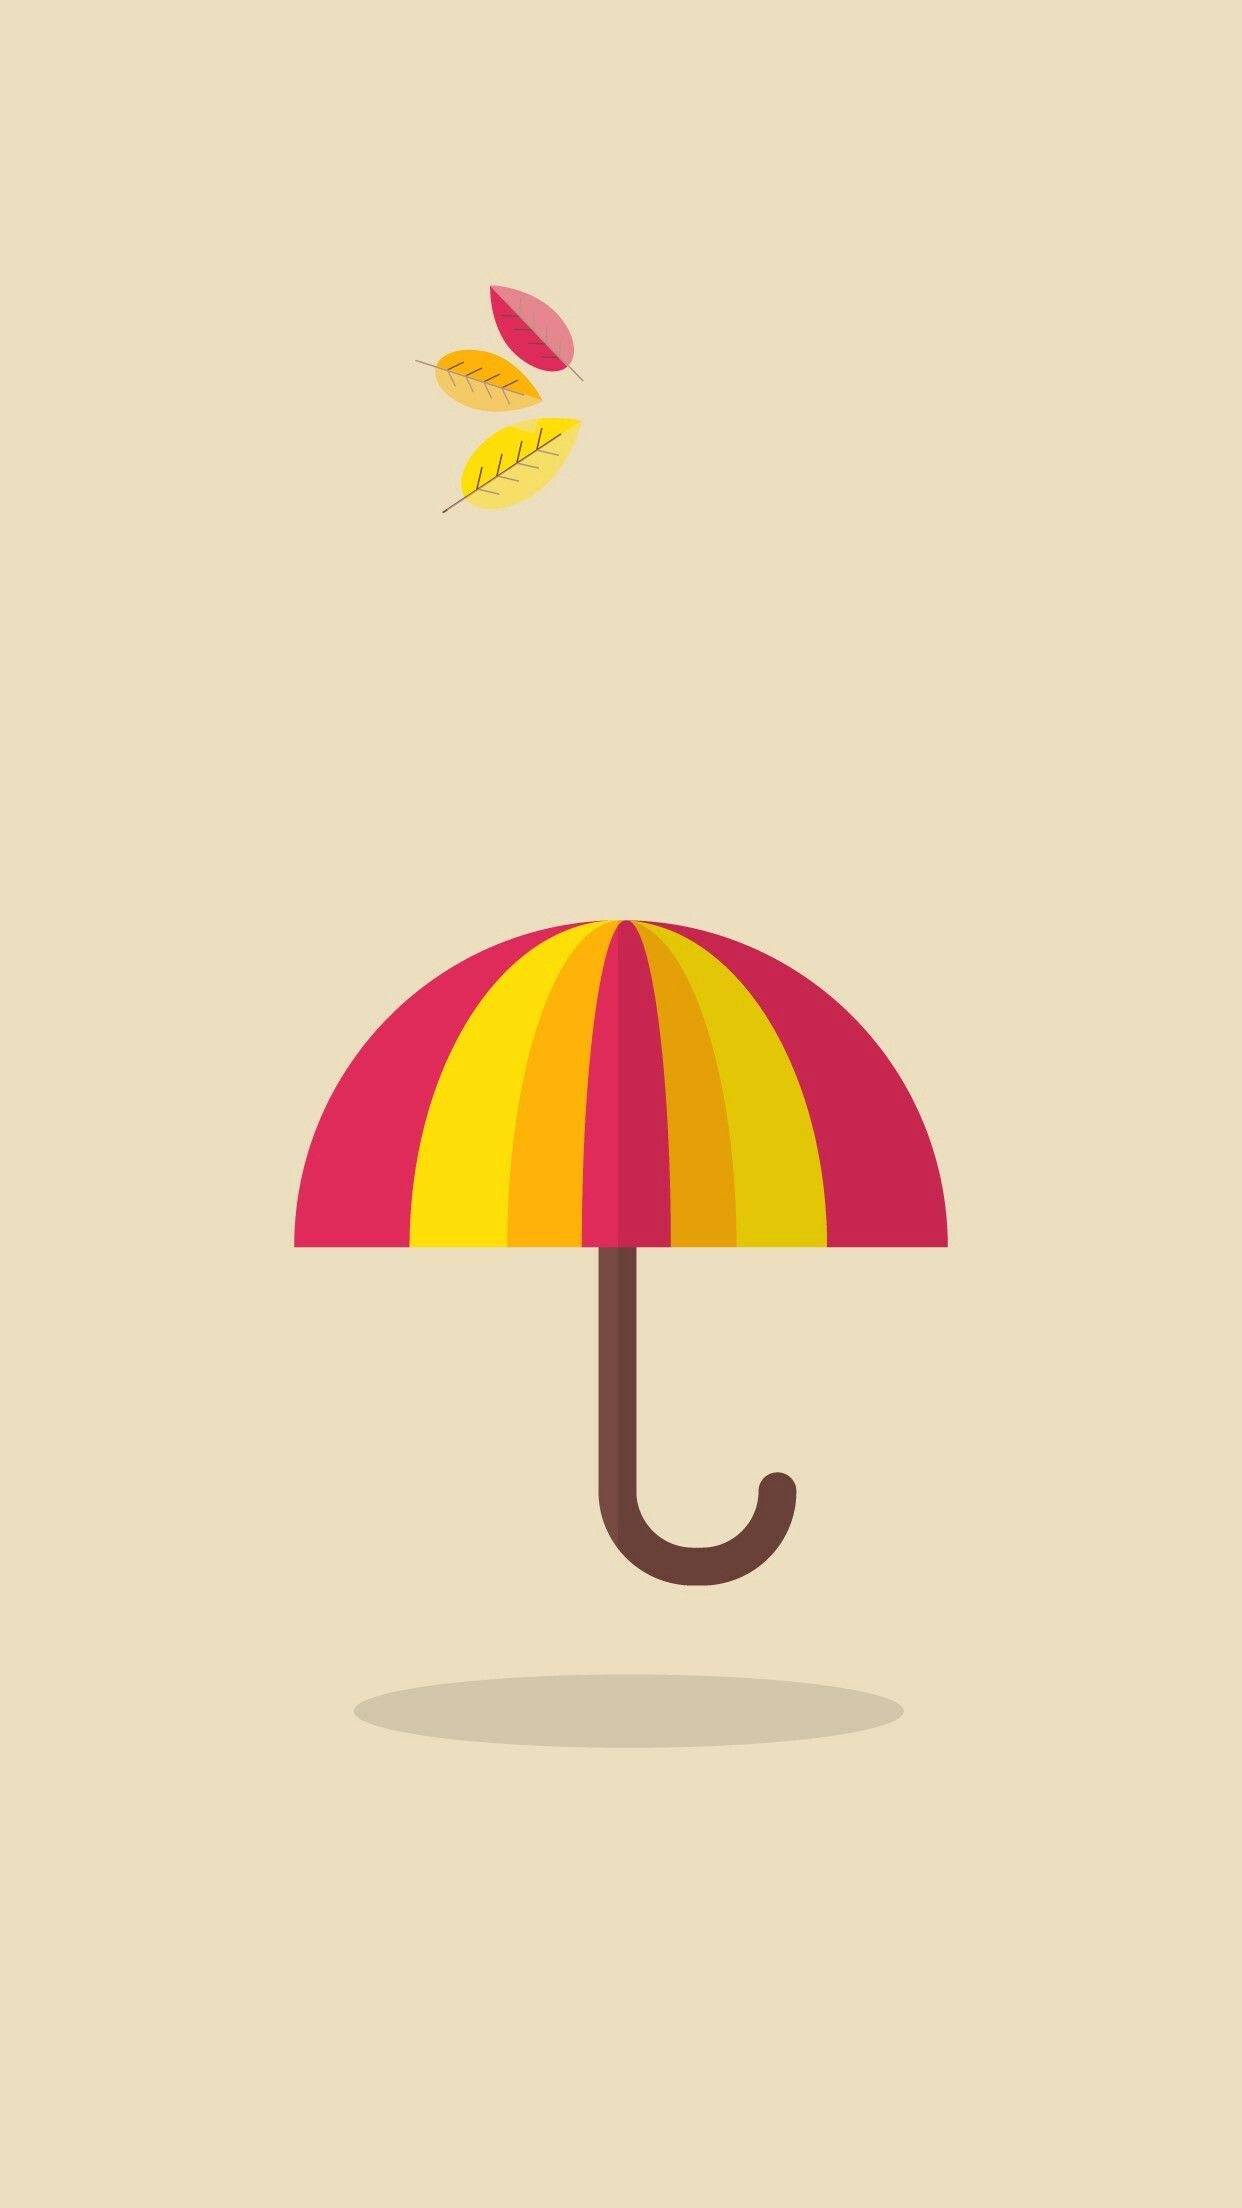 جدیدترین والپیپر مینیمال چتر با تم رنگی پاییزی مخصوص گوشی